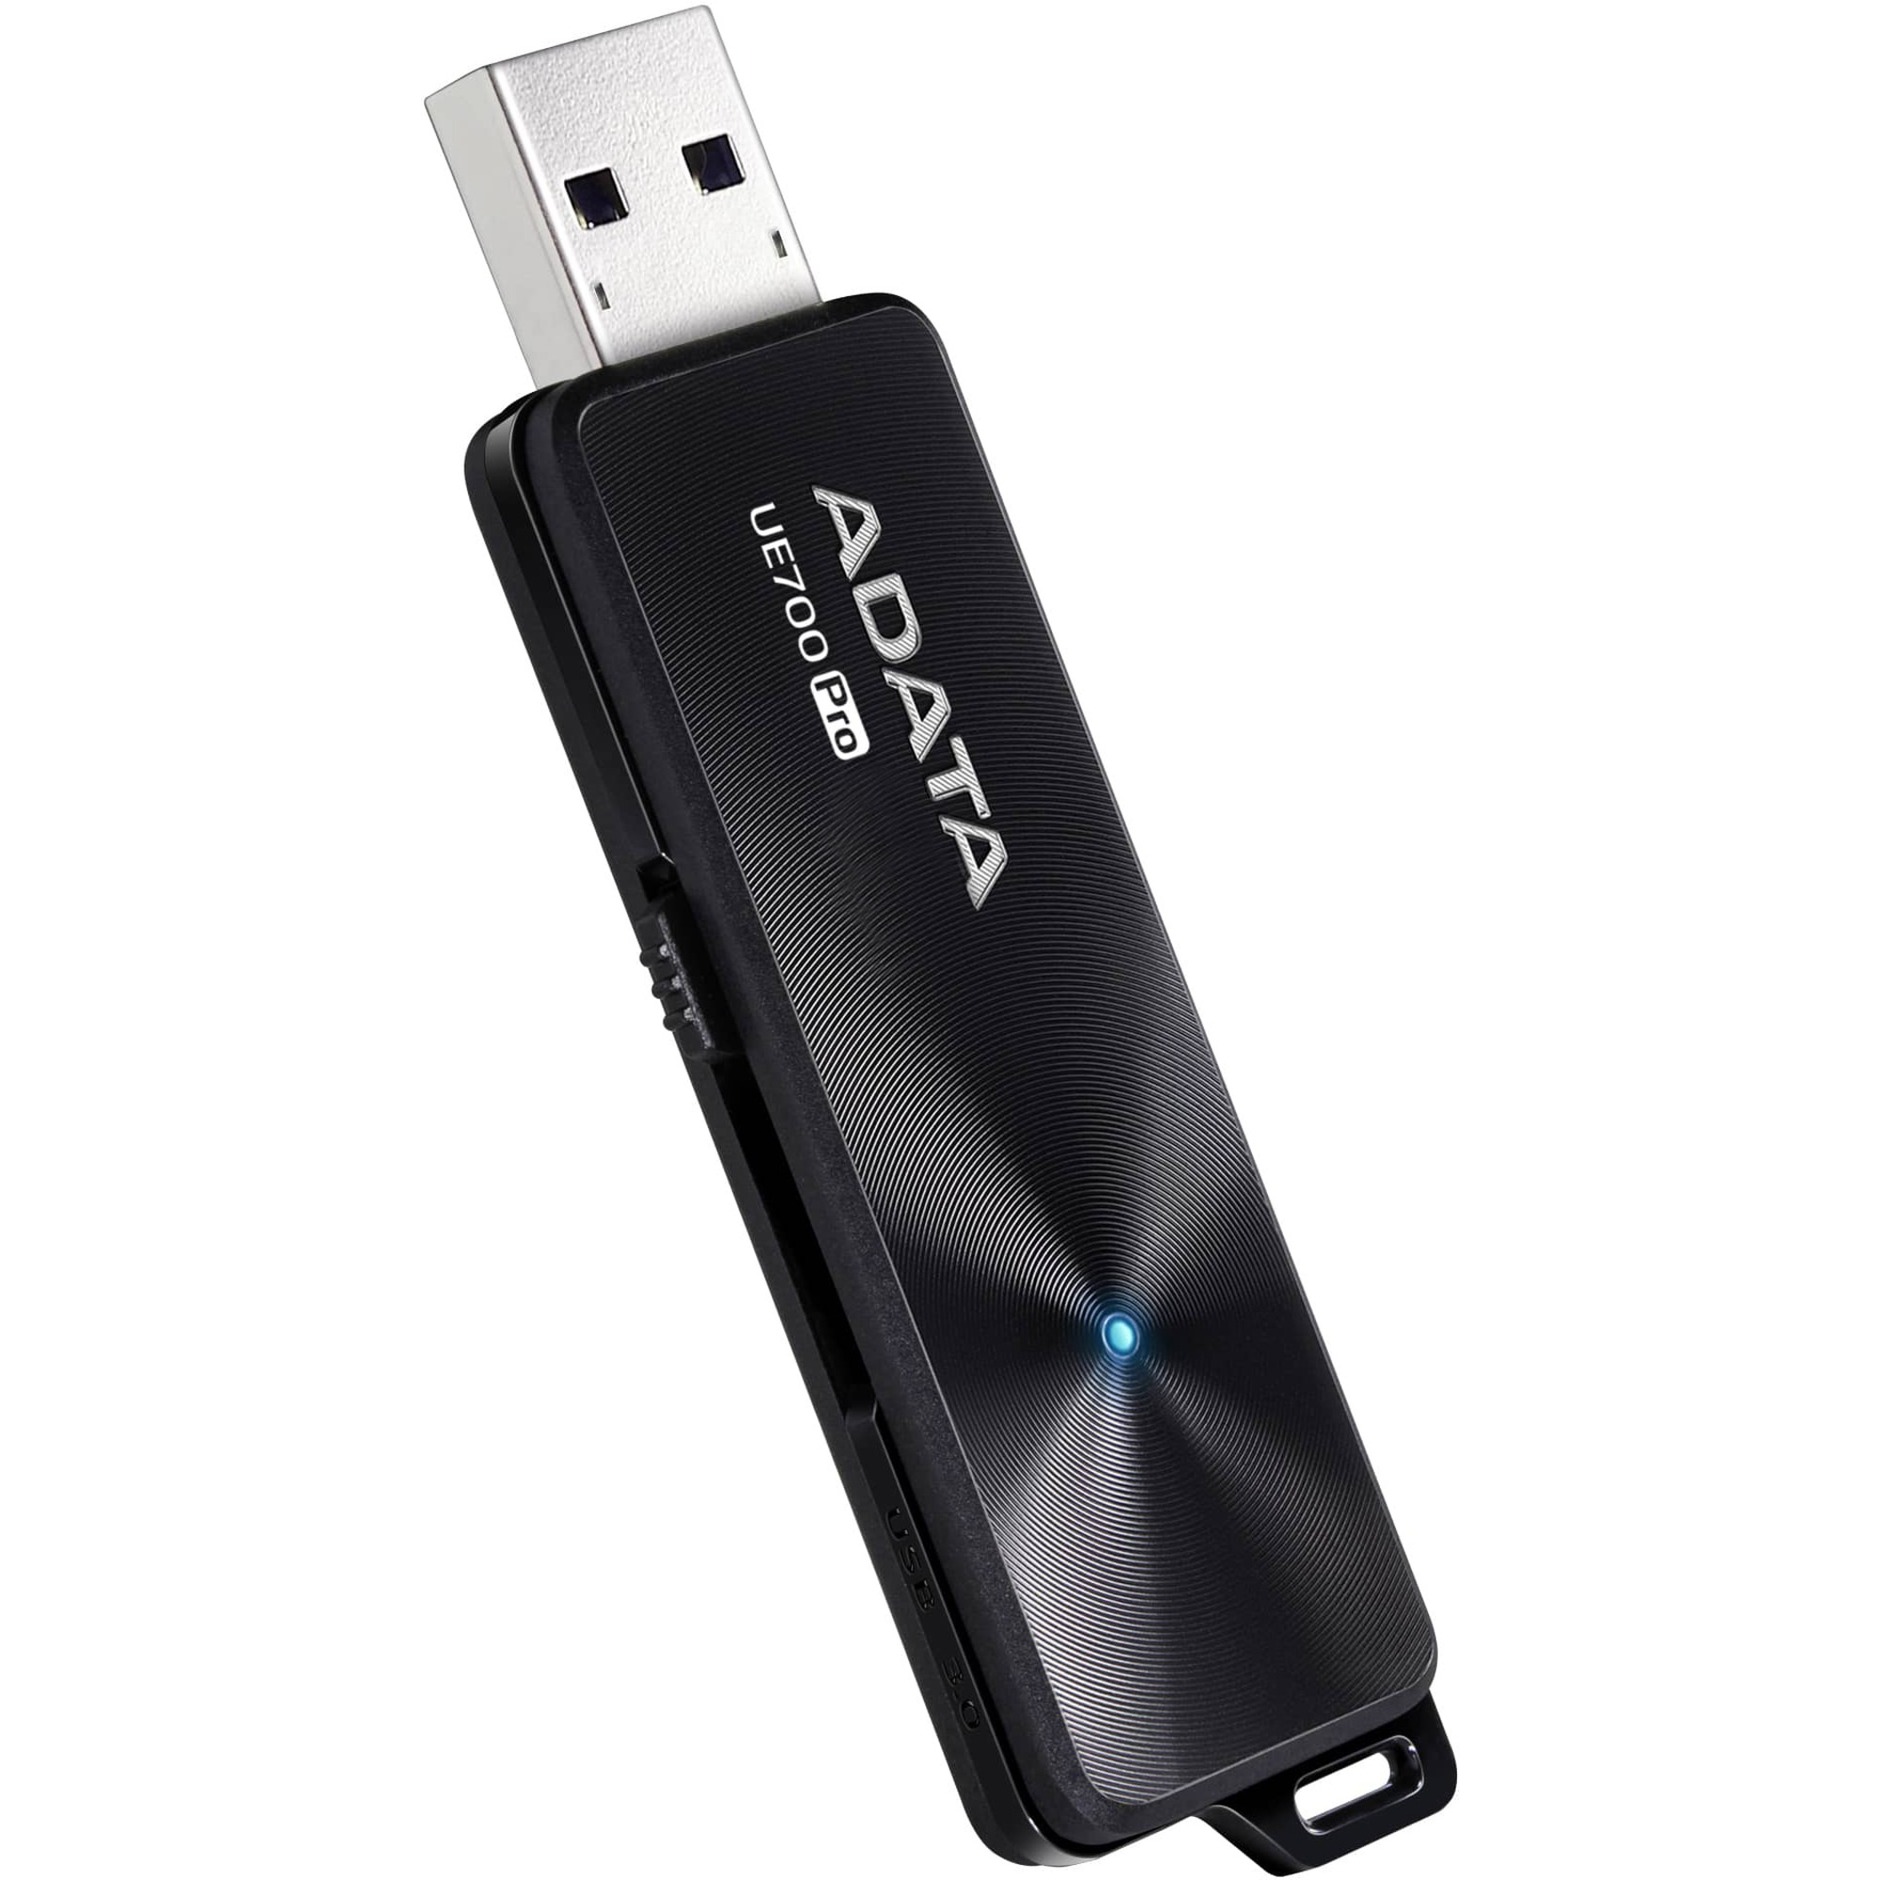 Image of Alternate - UE700 Pro 128 GB, USB-Stick online einkaufen bei Alternate